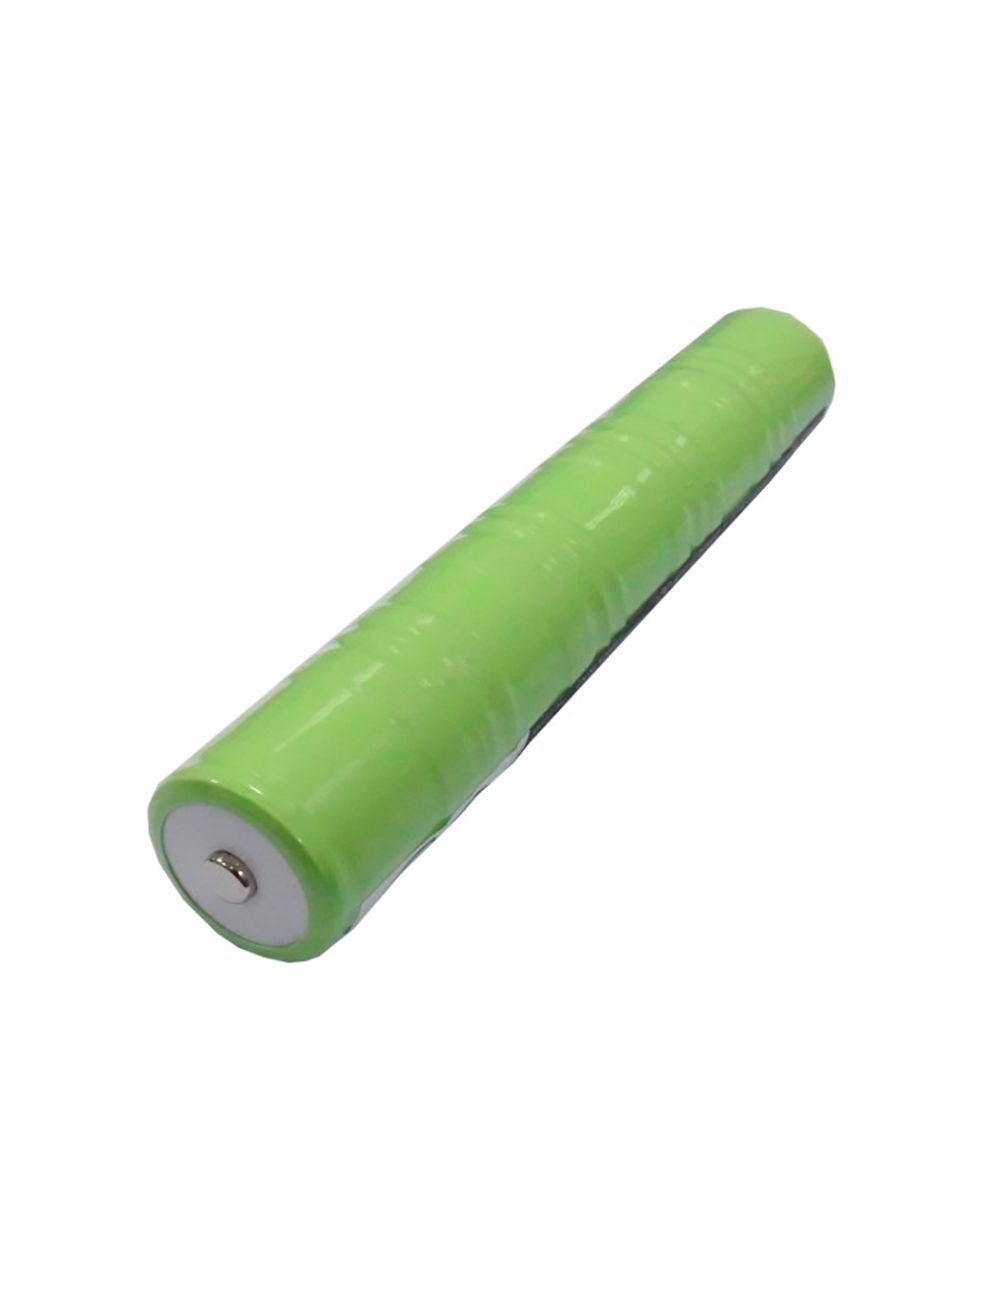 Batería para linternas Maglite, Vama, Stremlight de 6V 5000mAh - 1